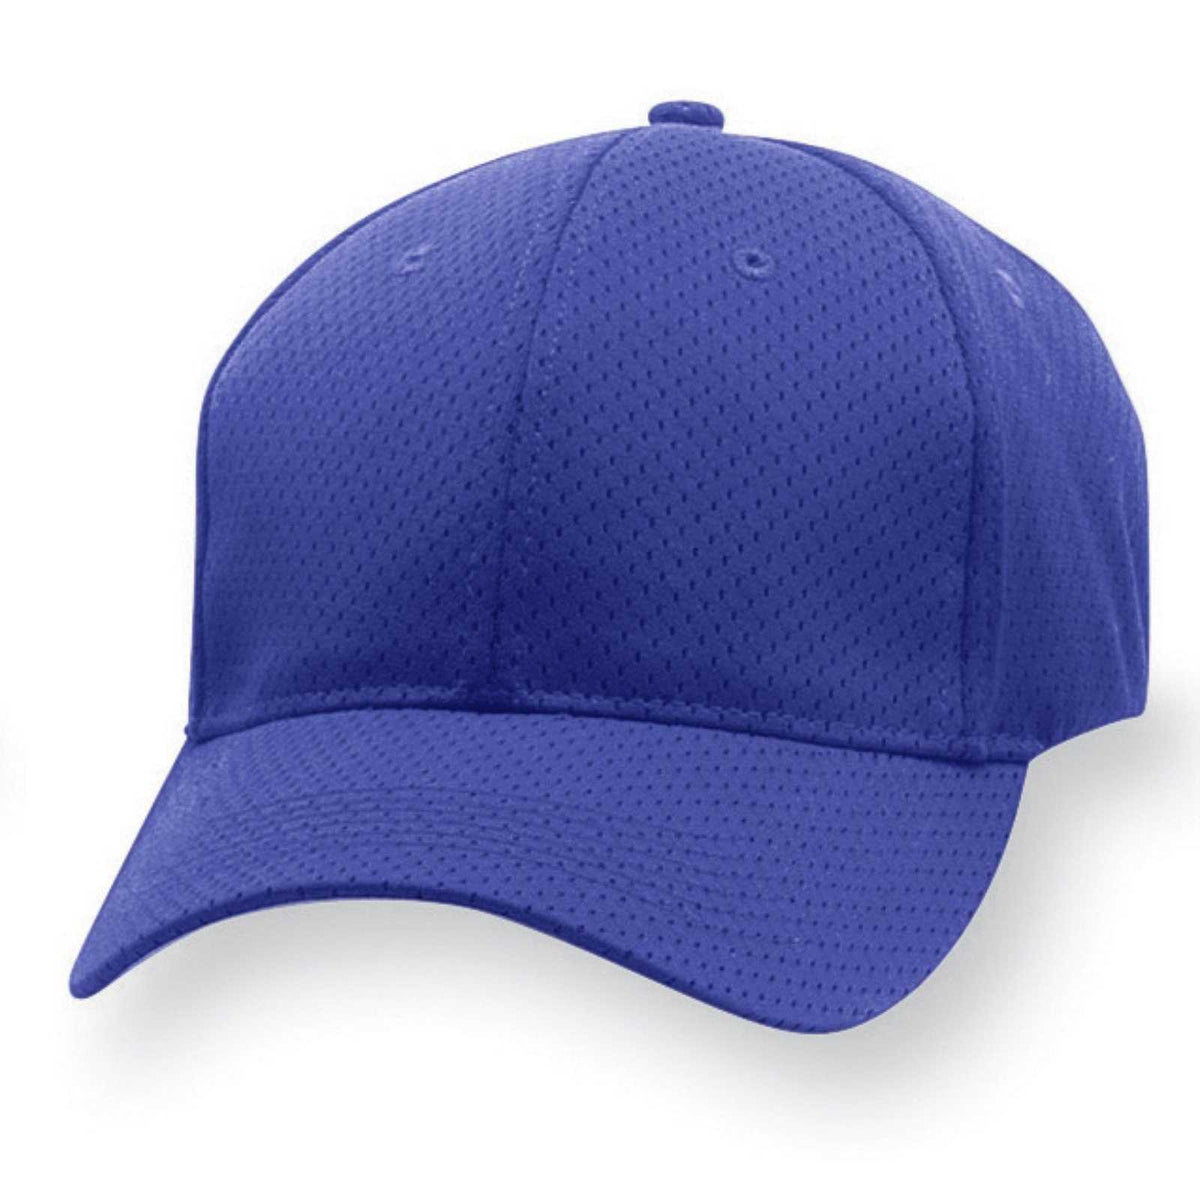 Augusta 6232 Sport Flex Athletic Mesh Cap - Purple - HIT a Double